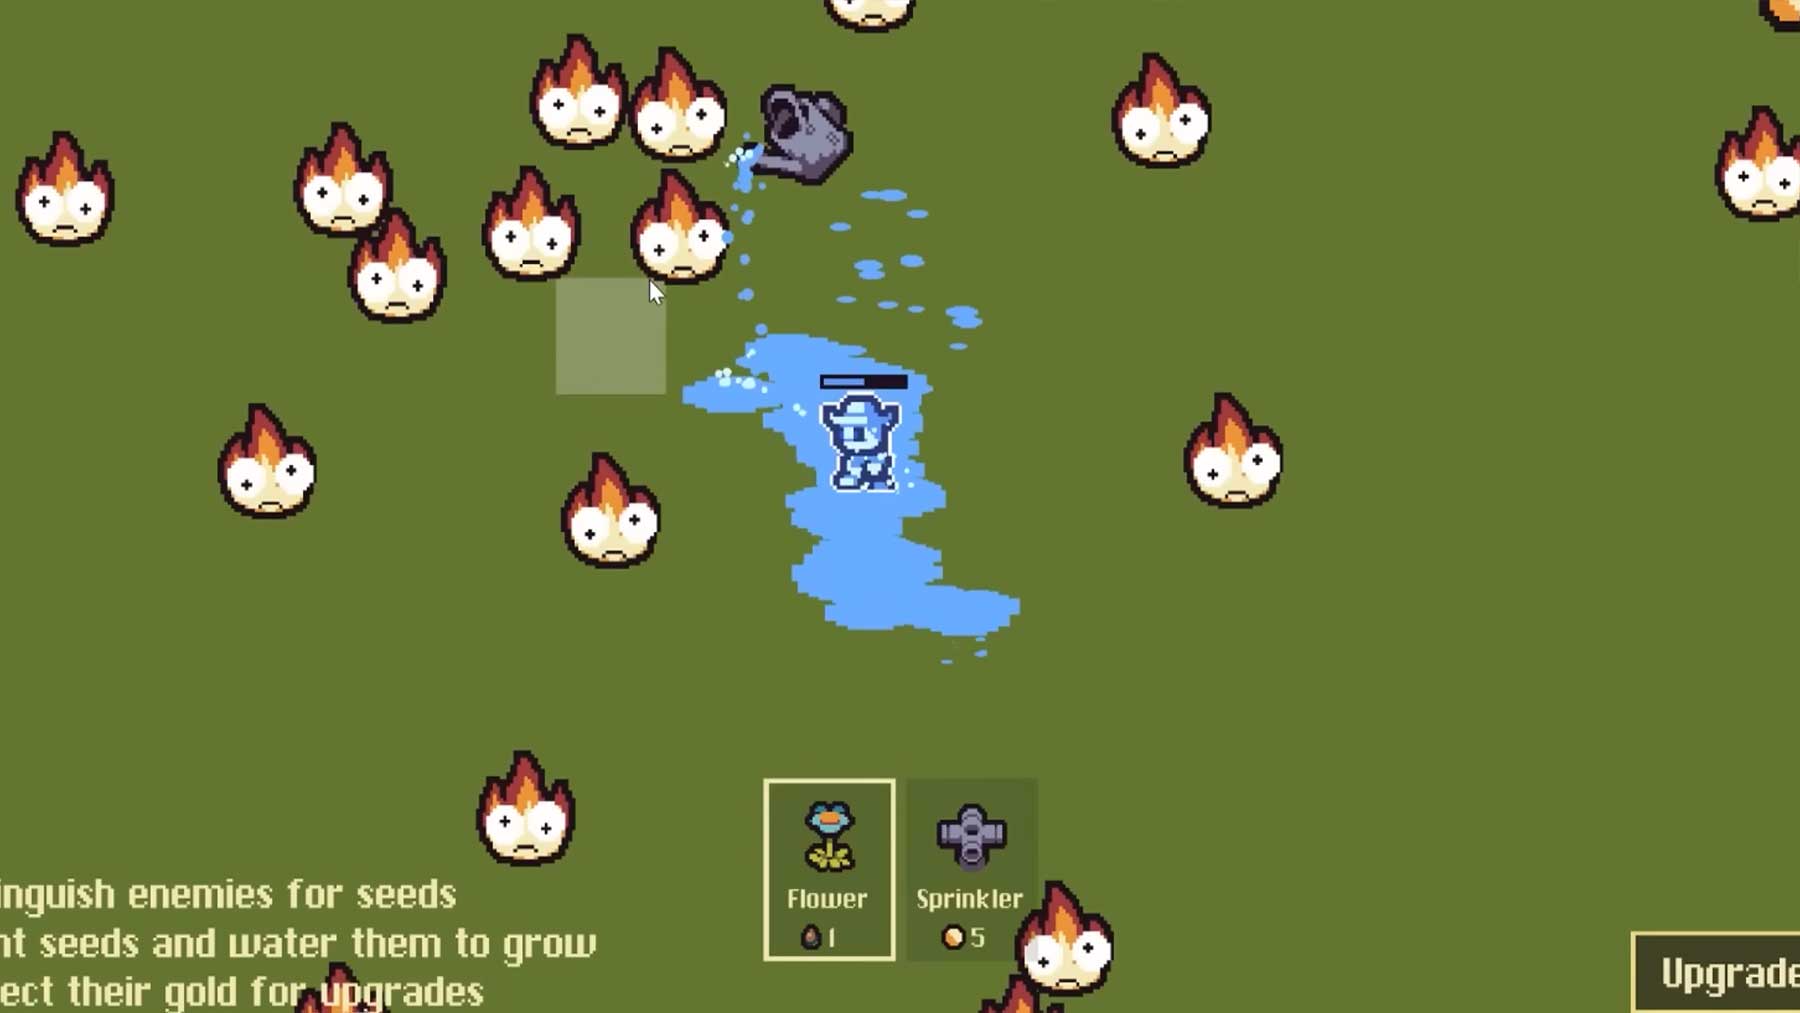 5 Devs erstellen Videospiel „Water Wars“ ohne Absprachen